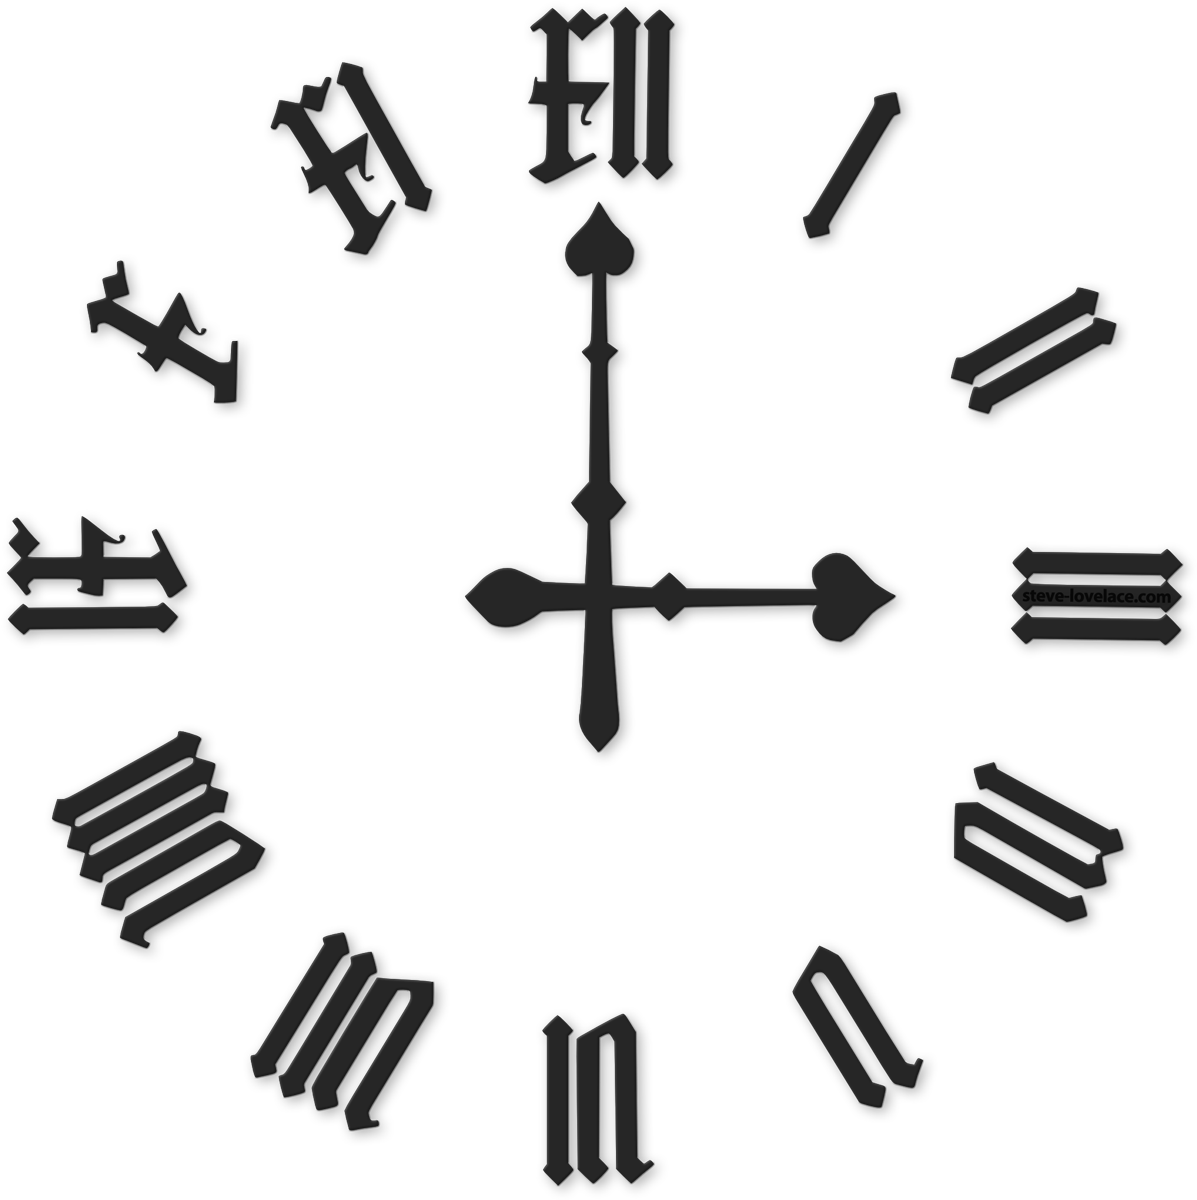 clipart clock roman numerals